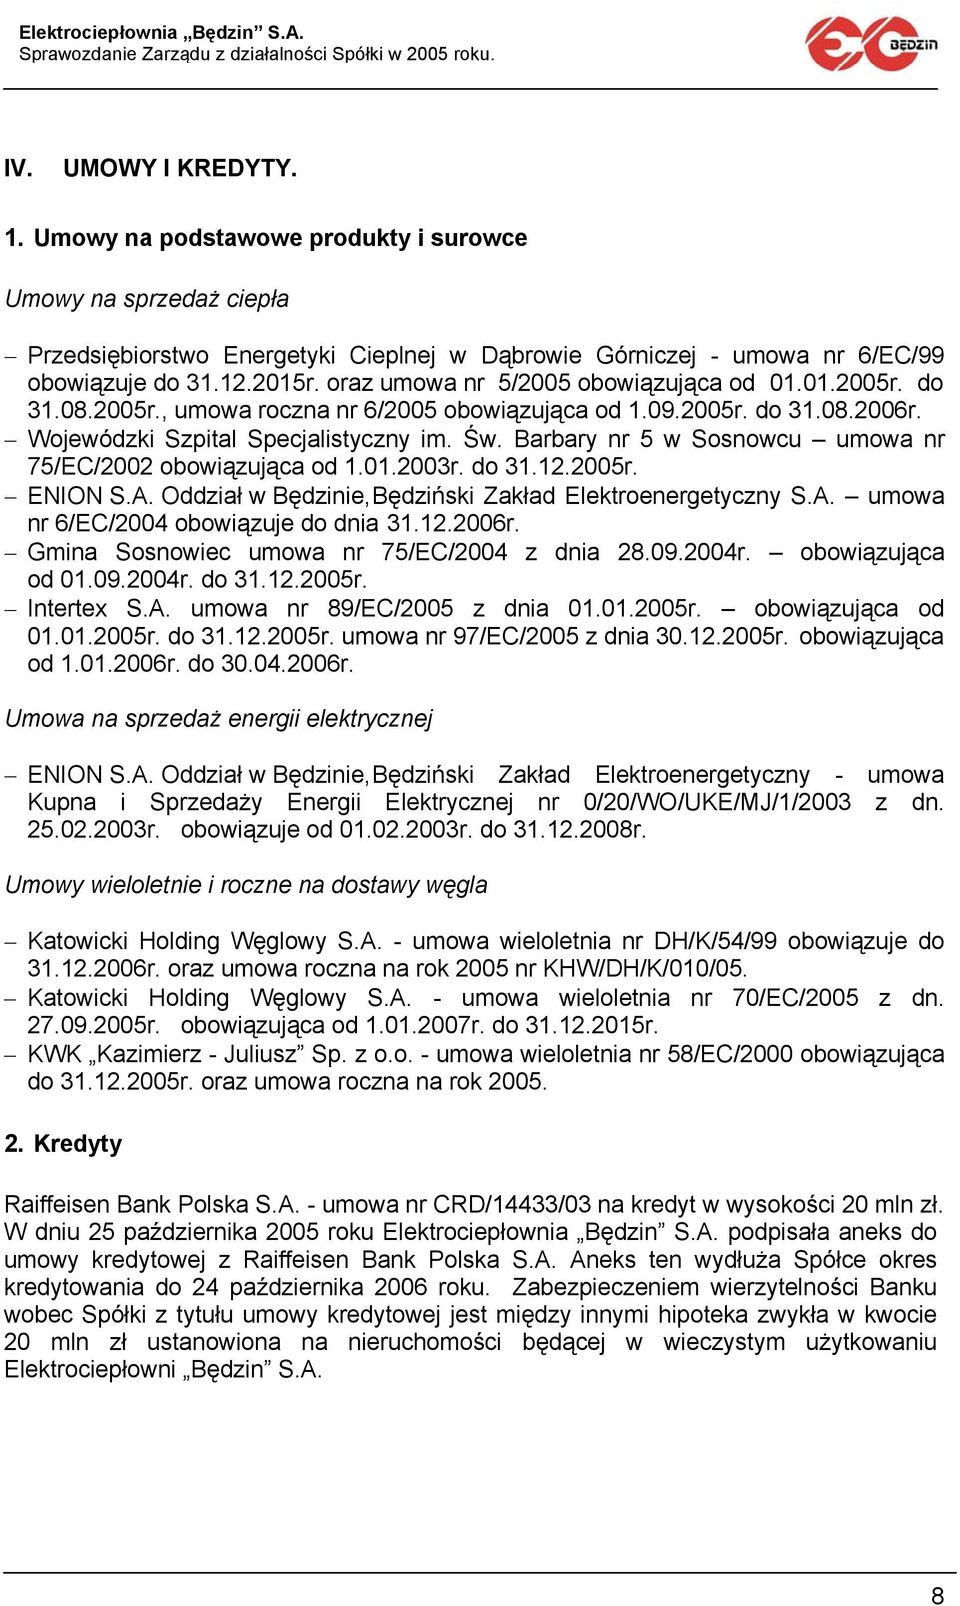 Barbary nr 5 w Sosnowcu umowa nr 75/EC/2002 obowiązująca od 1.01.2003r. do 31.12.2005r. ENION S.A. Oddział w Będzinie, Będziński Zakład Elektroenergetyczny S.A. umowa nr 6/EC/2004 obowiązuje do dnia 31.